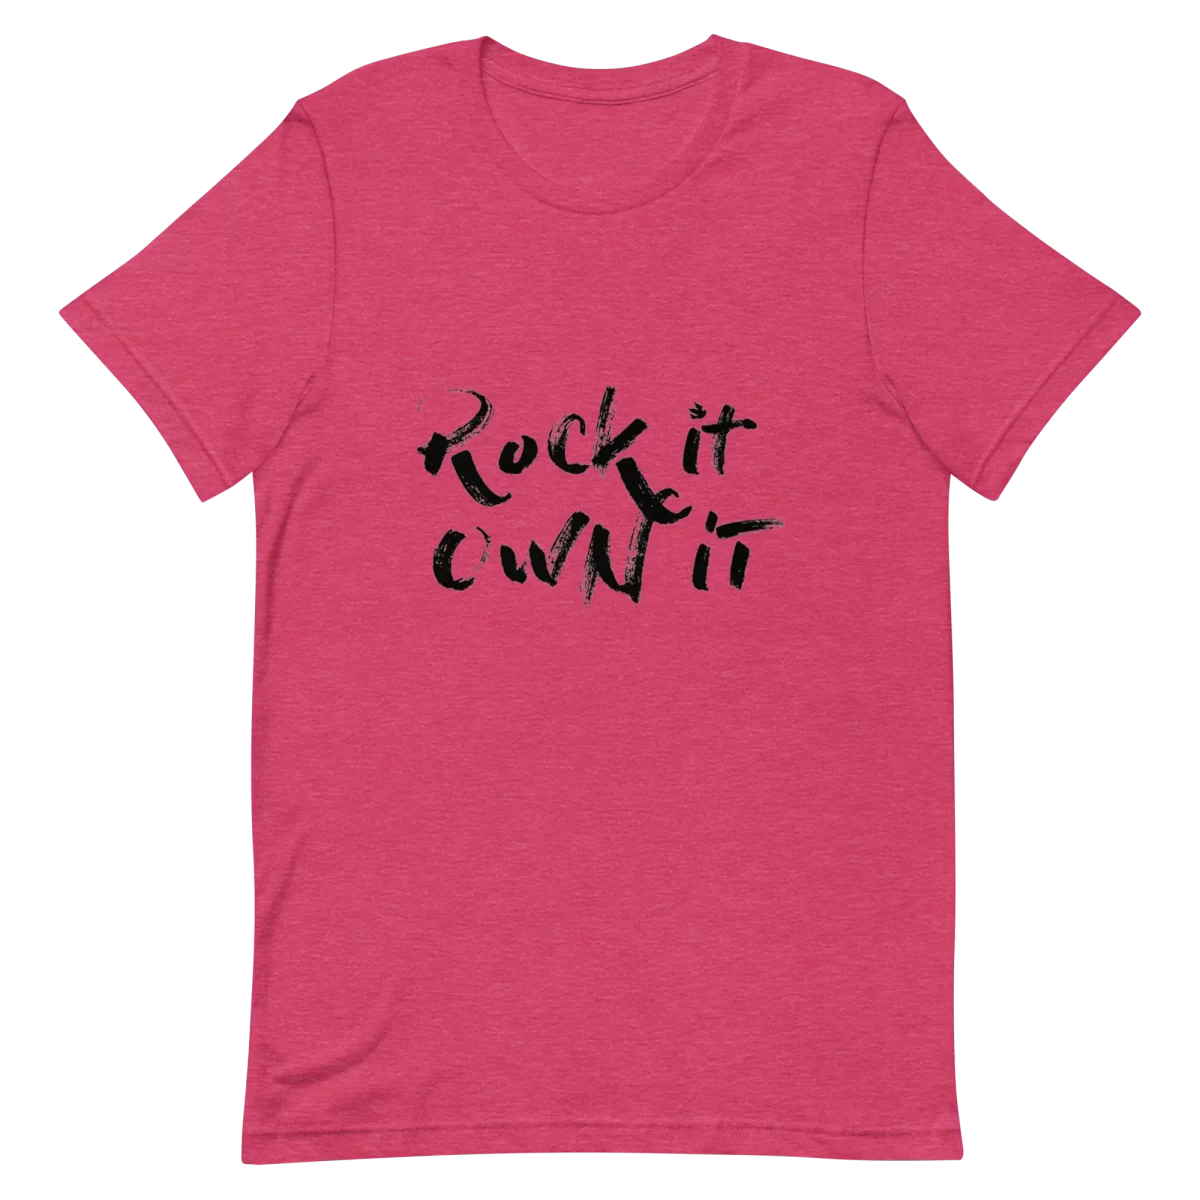 Heather Raspberry Unisex T-Shirt - Rock it Own it